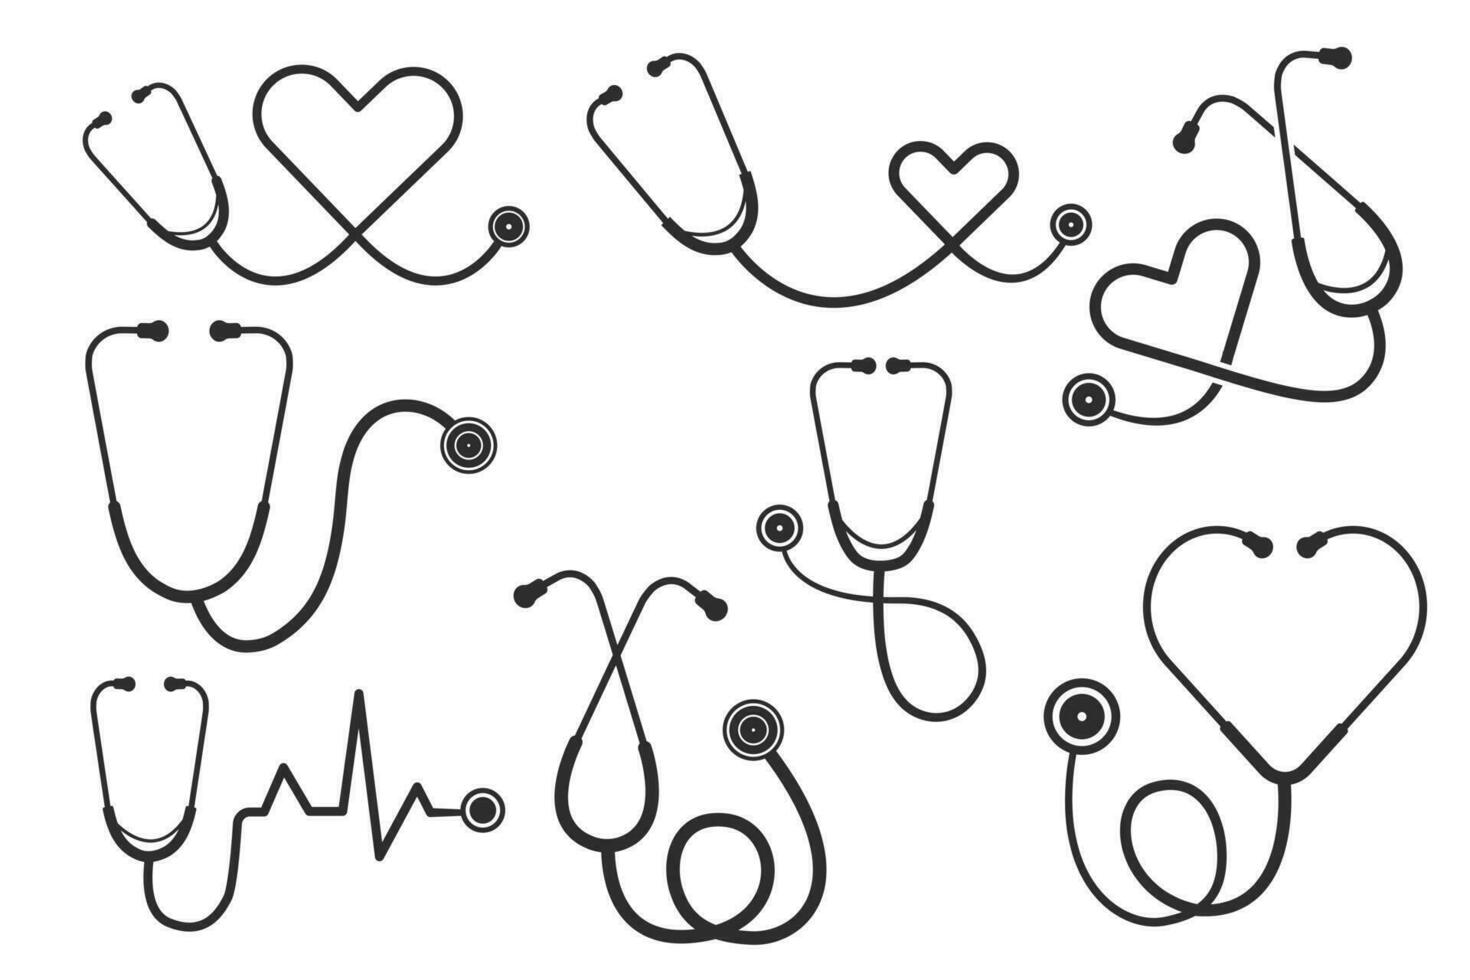 Stethoscope Vector Bundle, Medical Equipment Bundle, Nurse hat Vector, Blood, Nurse, Health, illustration, Clip Art, medical illustration